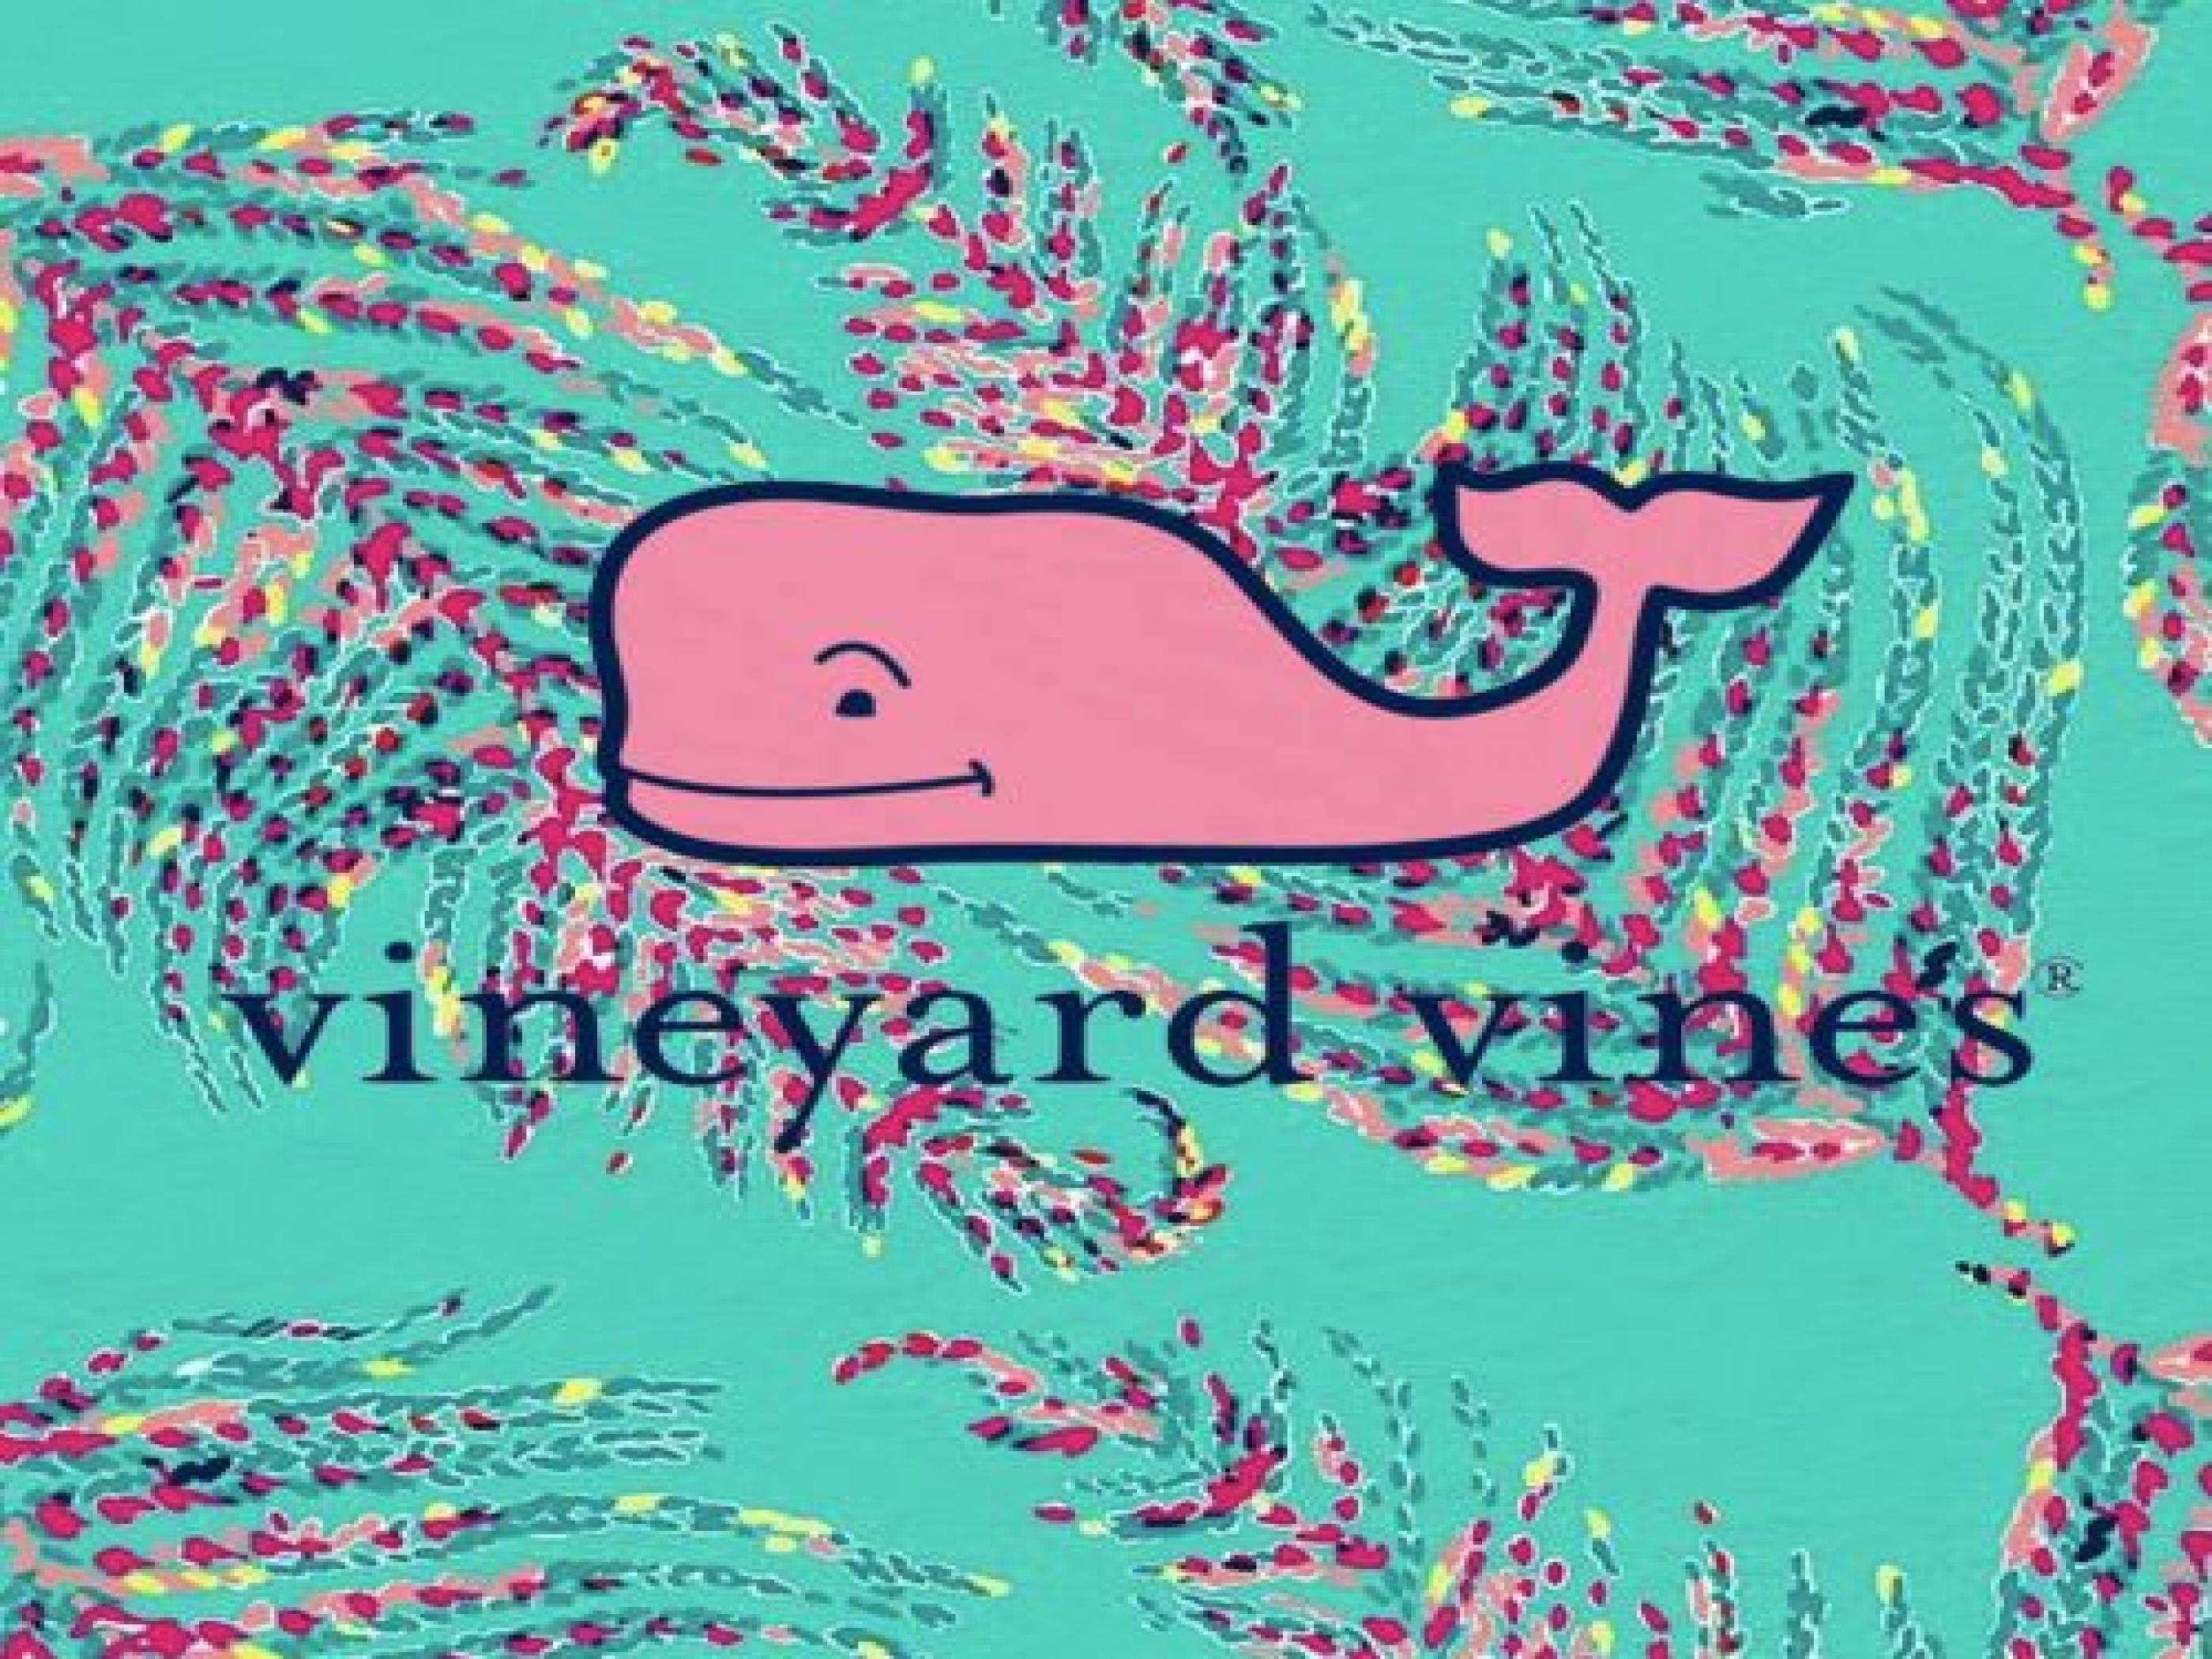 Vineyard Vines Iphone Wallpapers